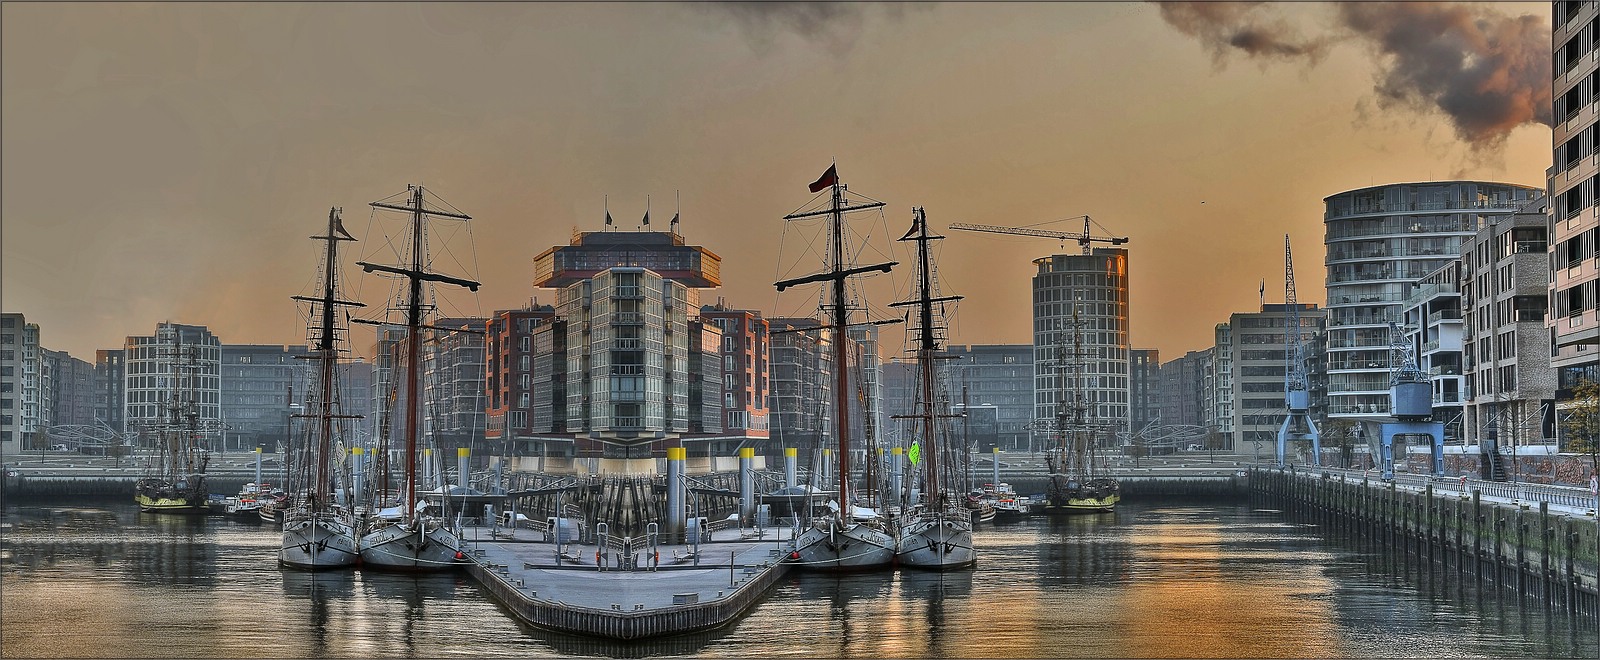 * Hafen-City 2.0 *